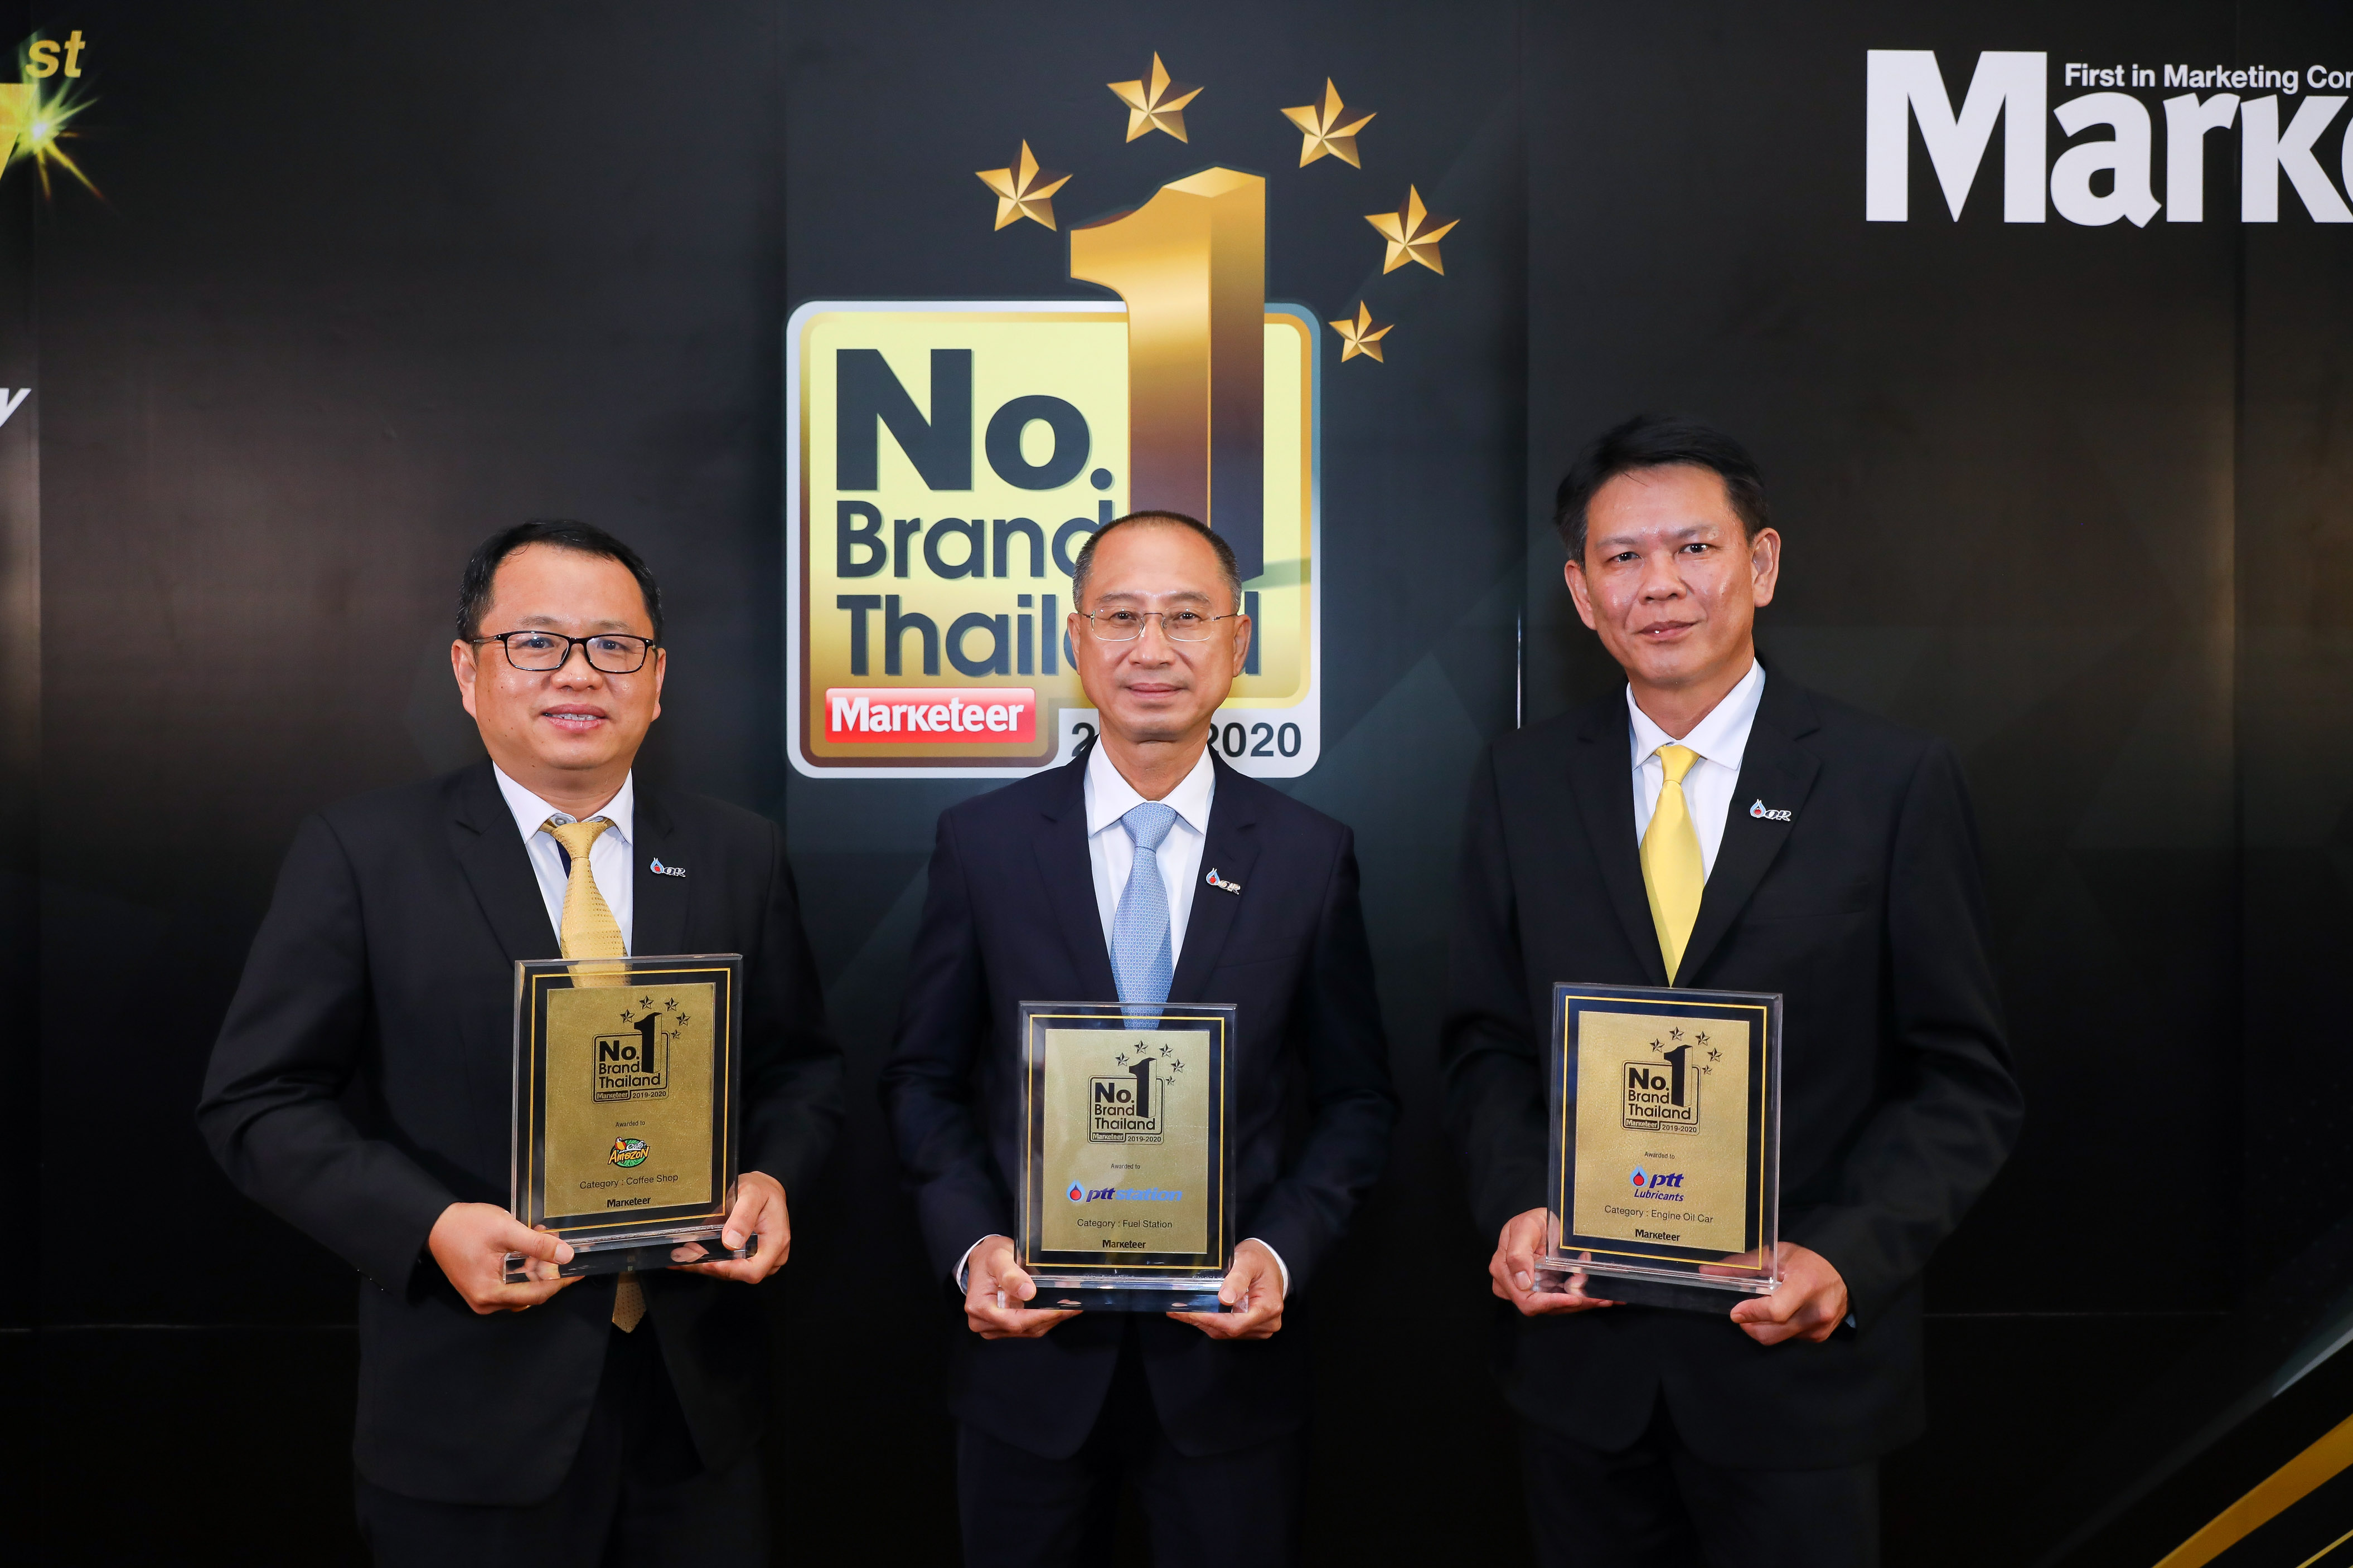 พีทีที สเตชั่น พีทีที ลูบริแคนท์ส และ คาเฟ่ อเมซอน คว้ารางวัล Marketeer No.1 Brand Thailand 2019-2020 ครองใจผู้บริโภคต่อเนื่องนานถึง 9 ปี